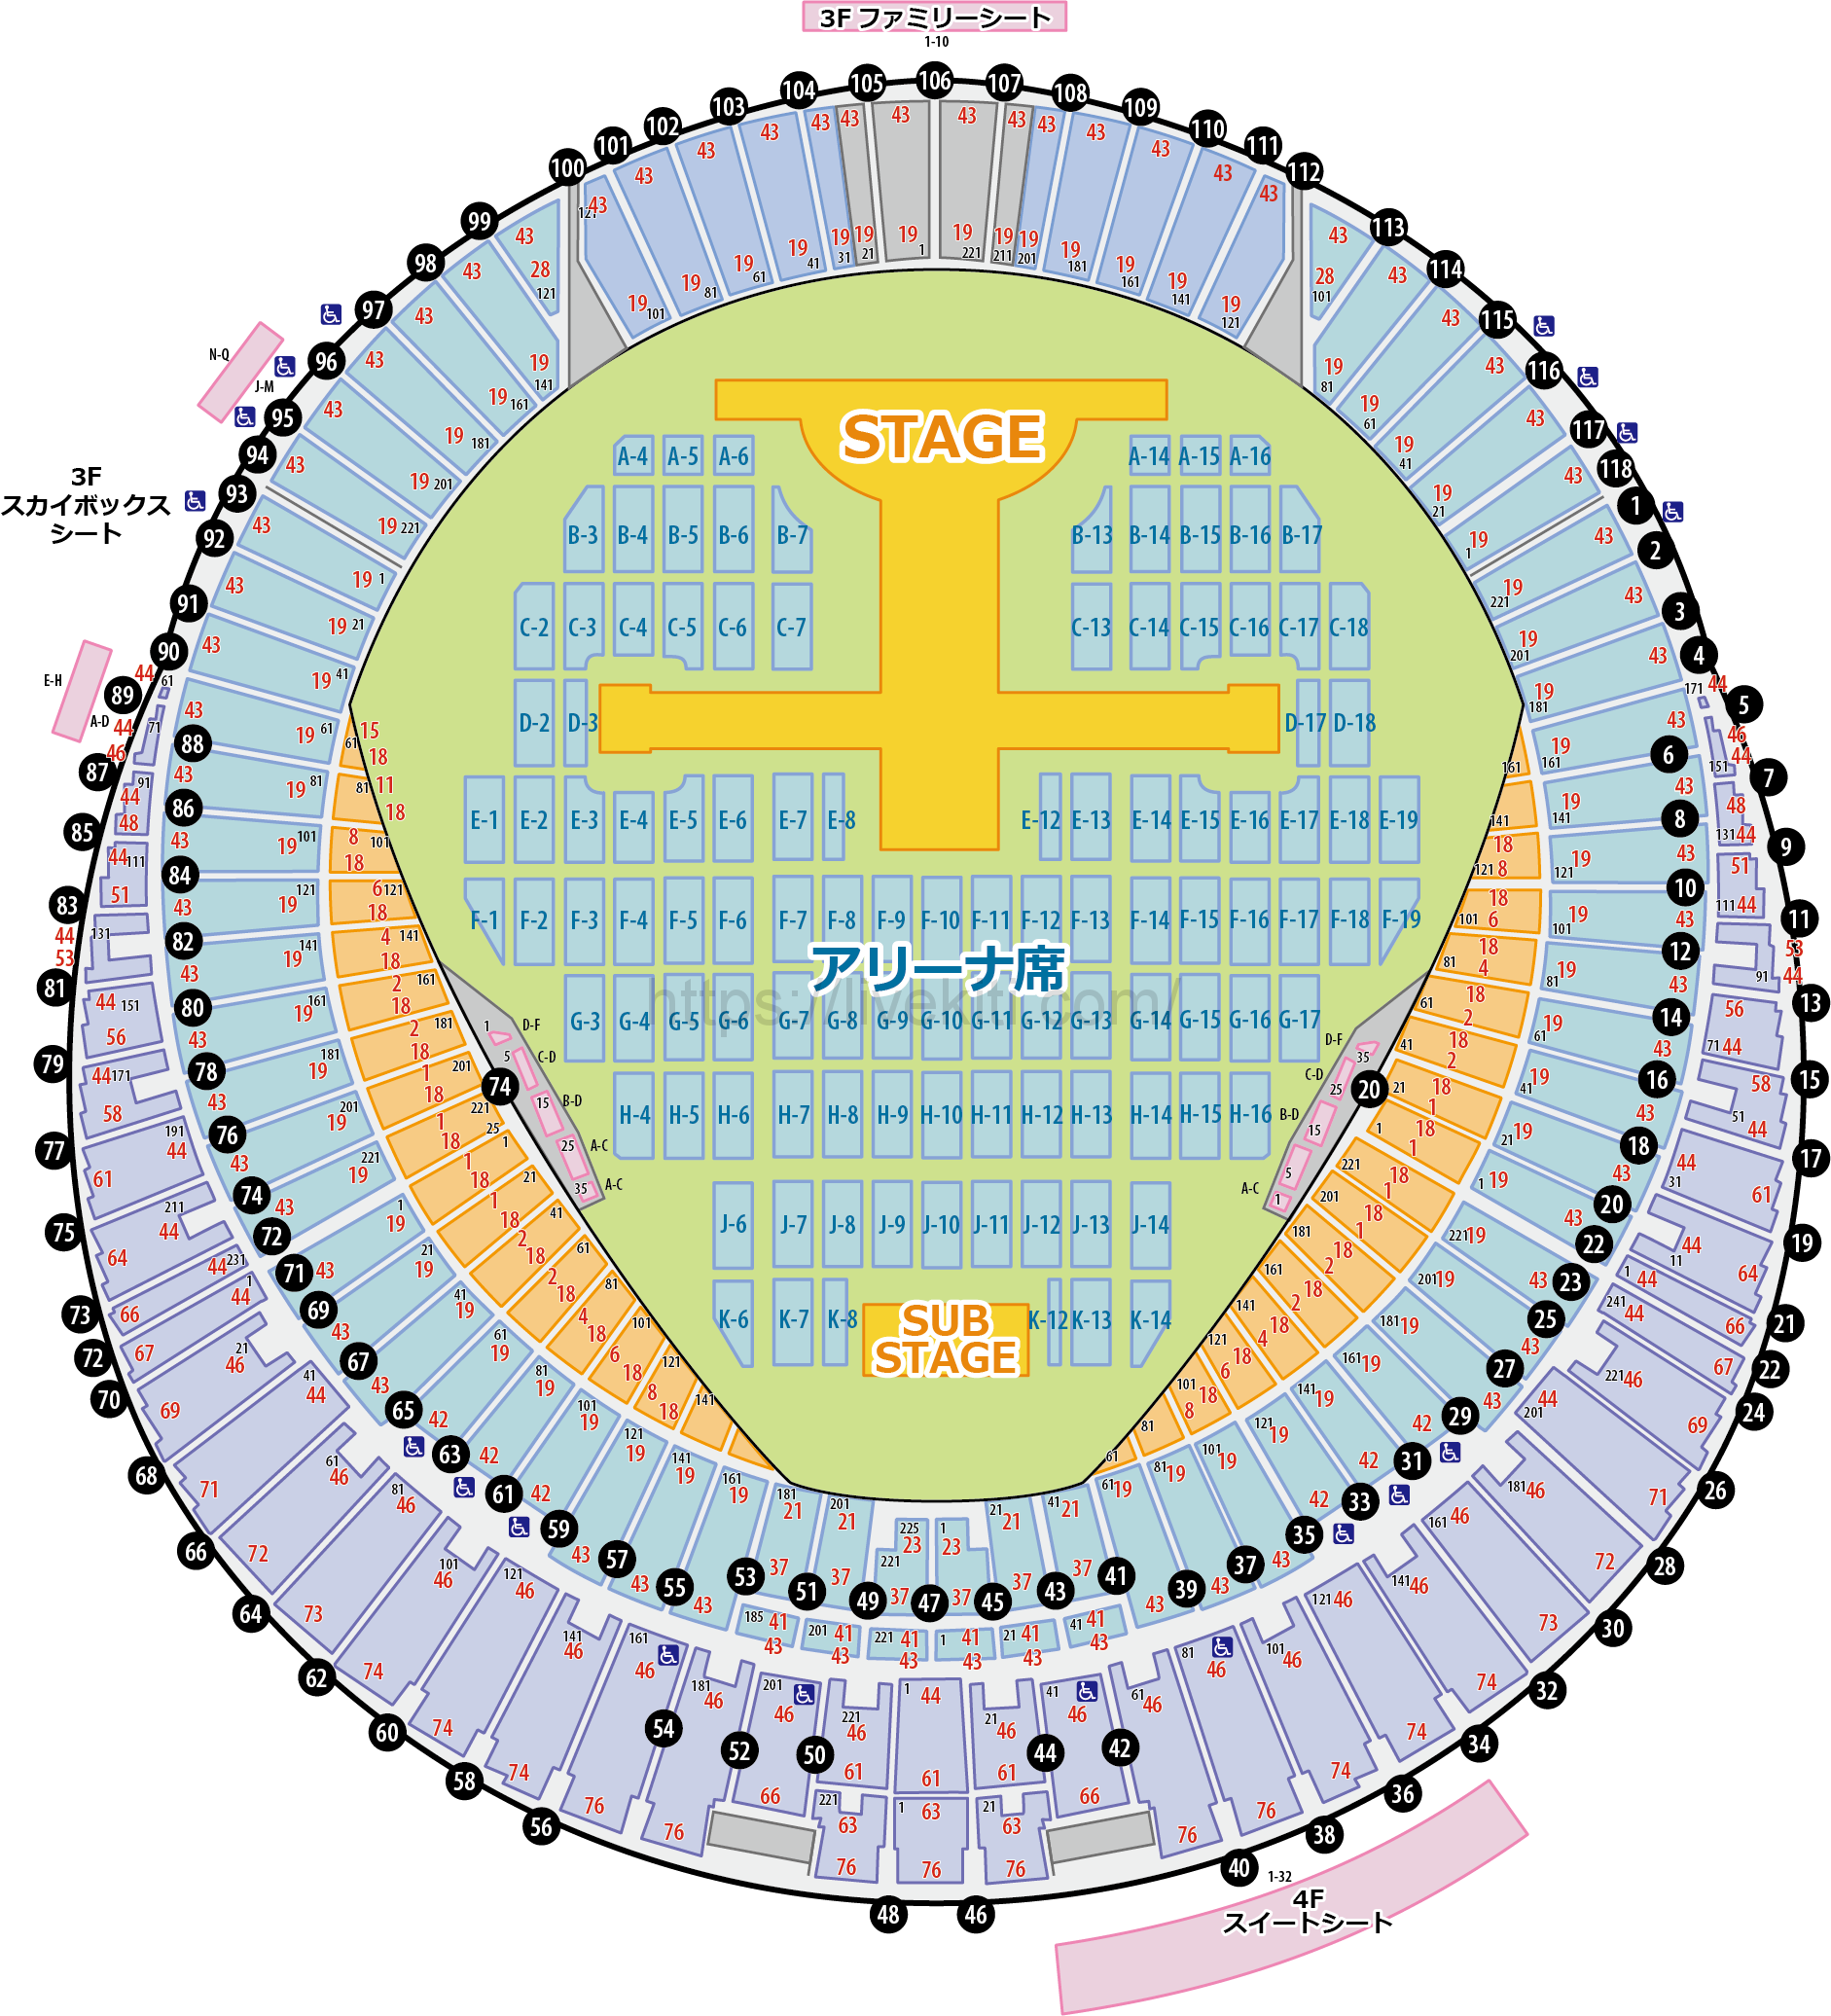 札幌ドーム アリーナ席の座席表と見え方 ライブ基地